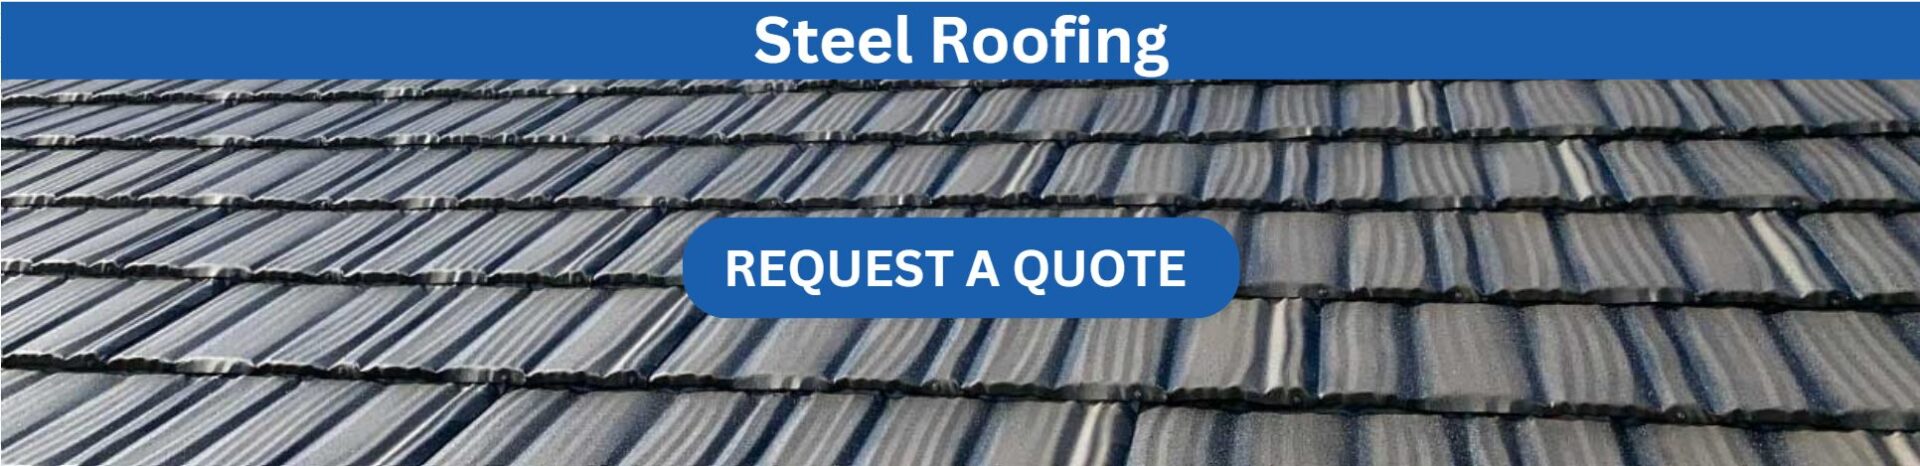 steel roofing